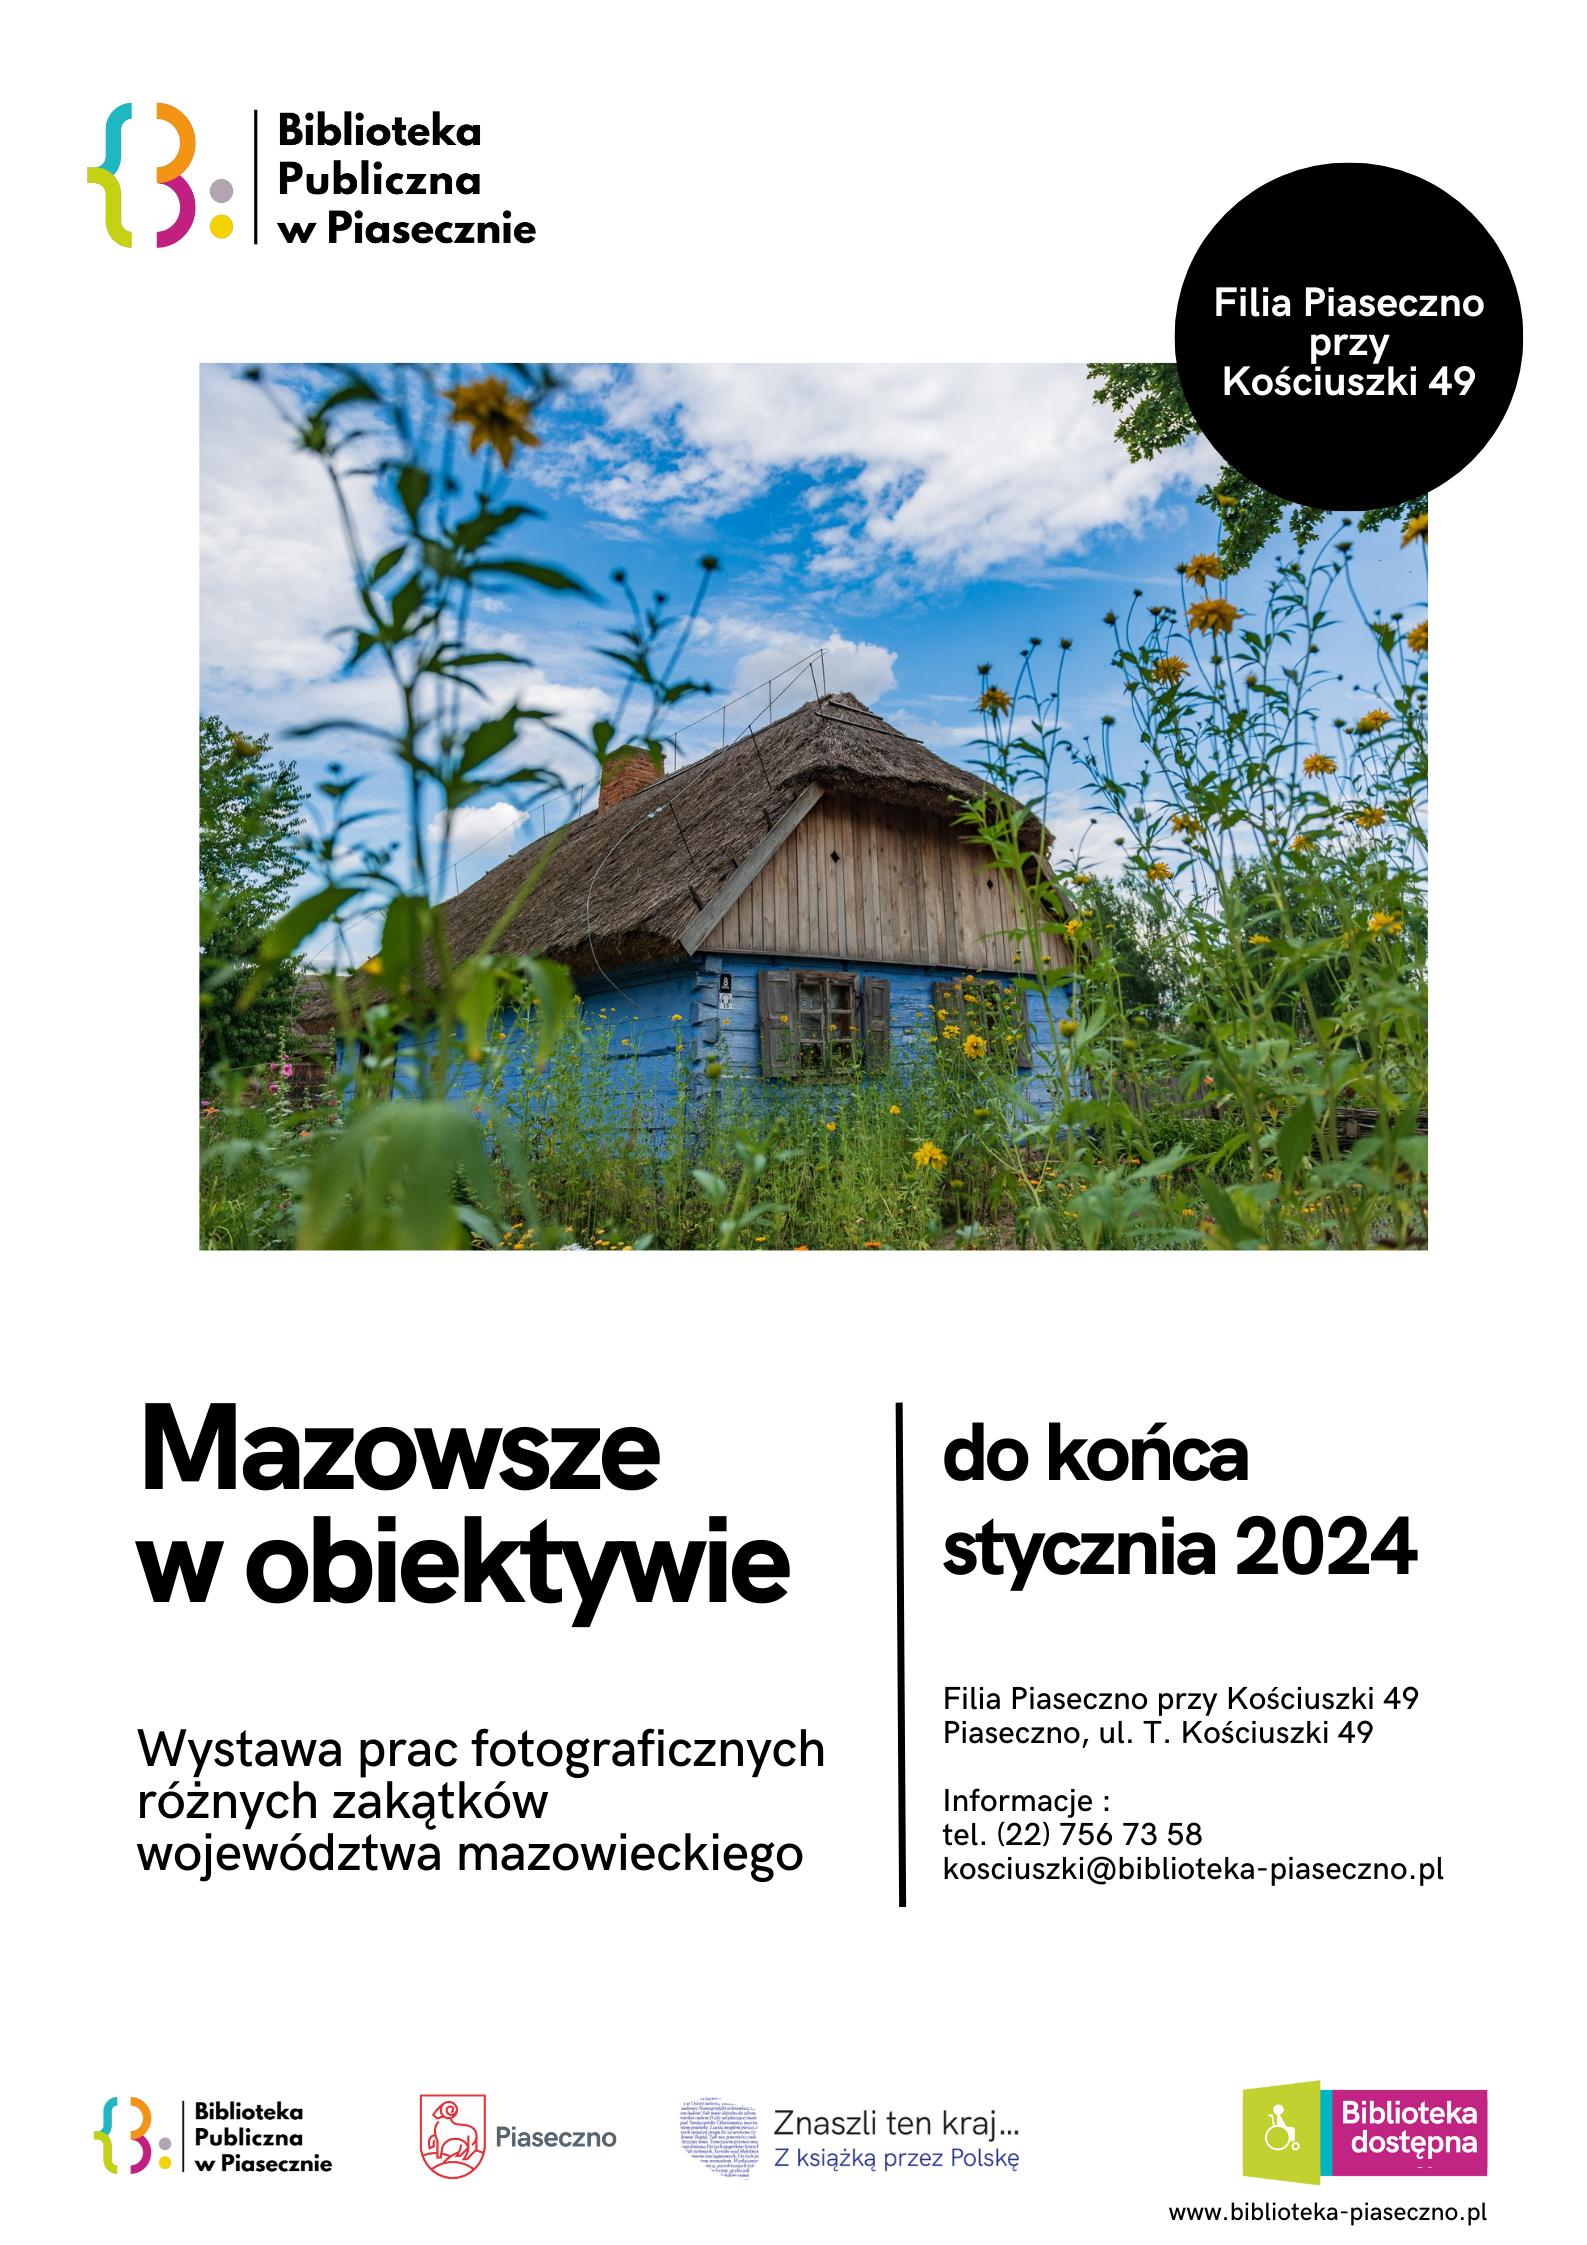 Plakat promujący wystawę fotograficzną "Mazowsze w obiektywie"